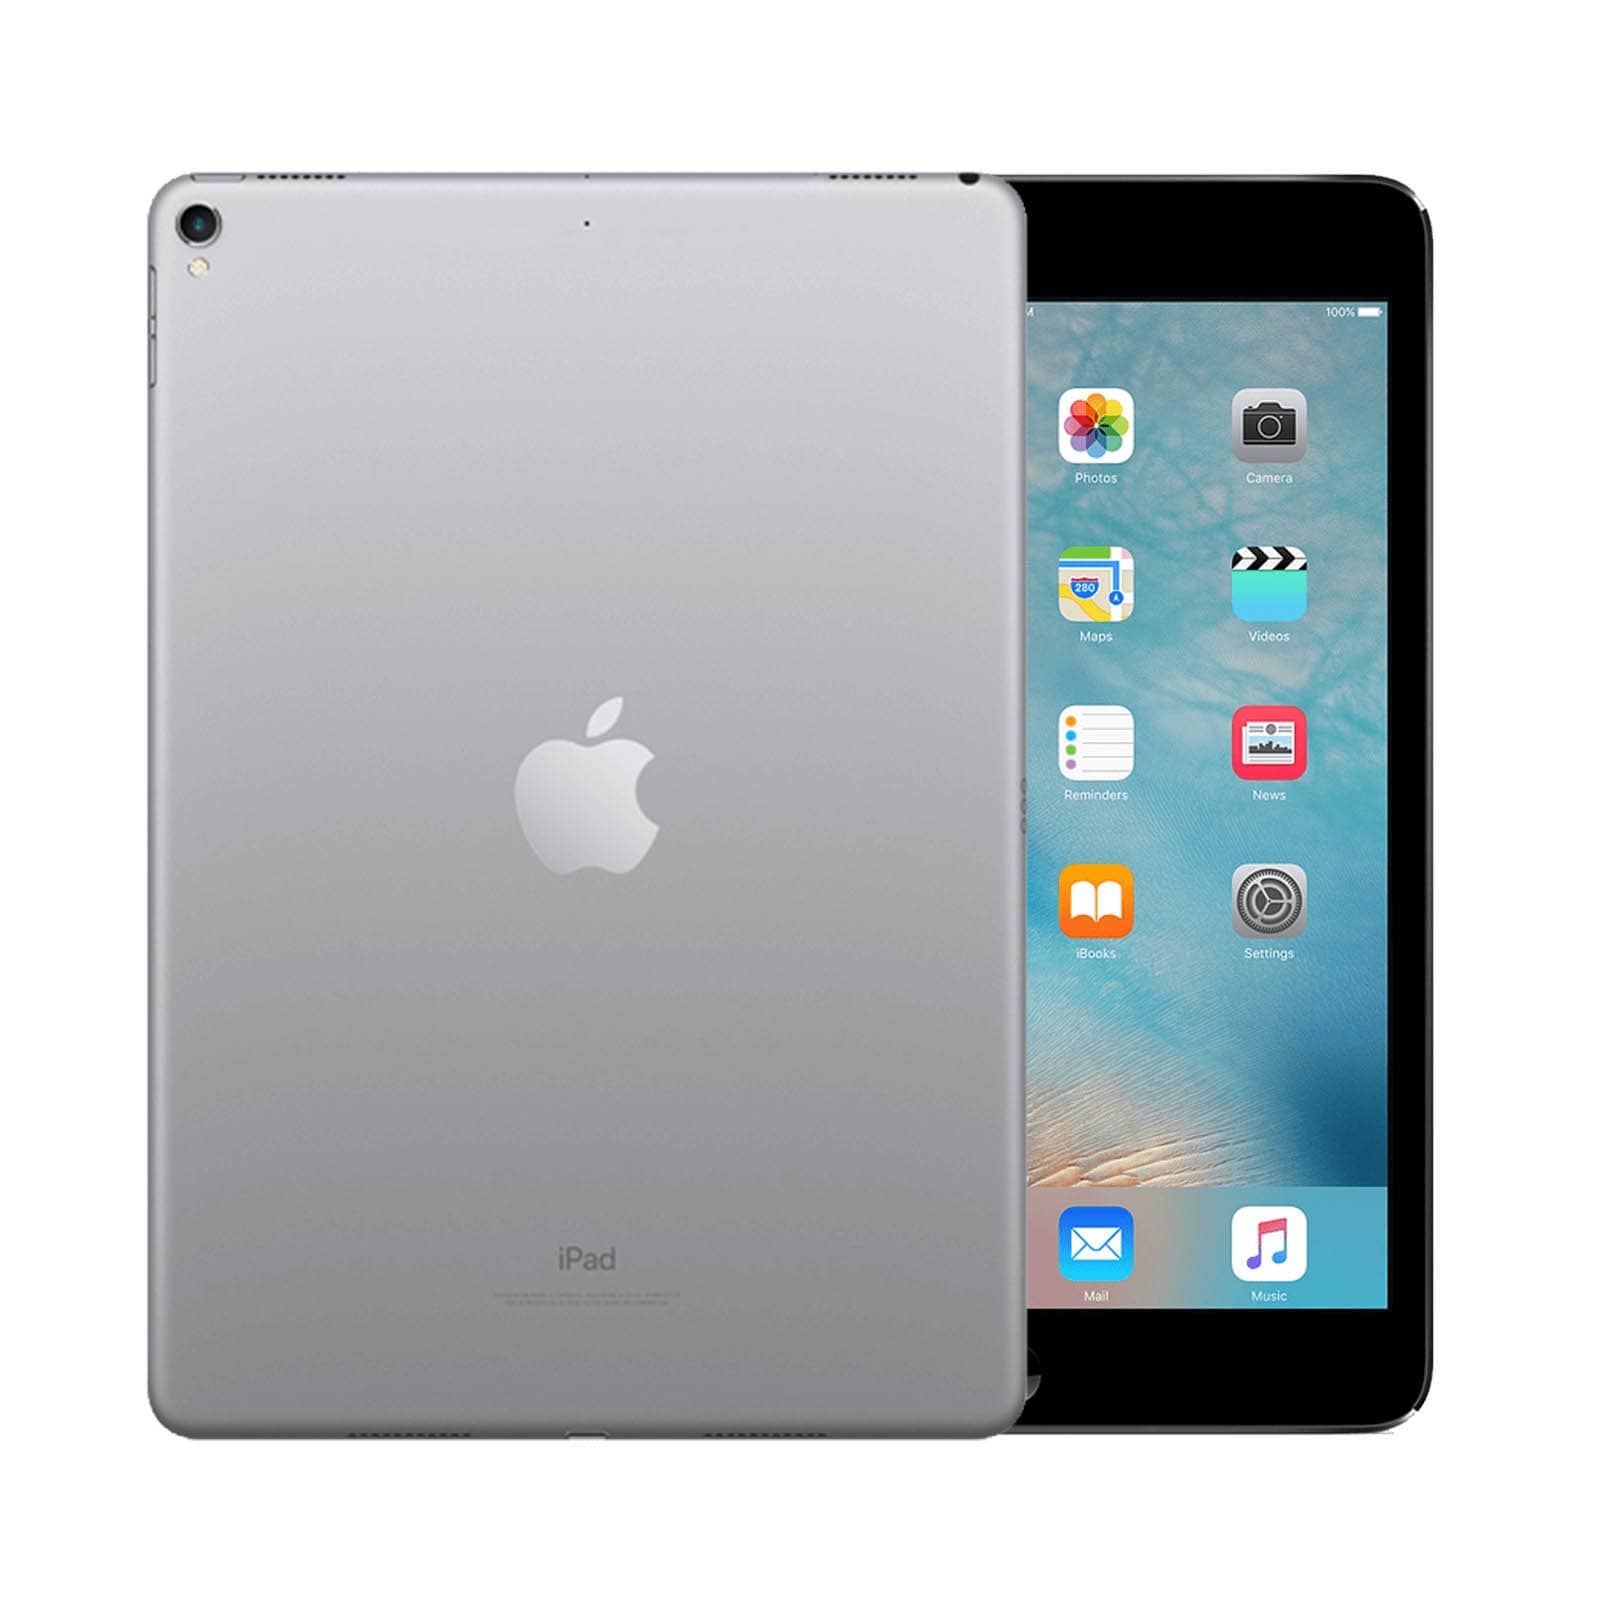 iPad Pro 9.7 Inch 128GB Space Grey Very Good - WiFi 128GB Space Grey Very Good